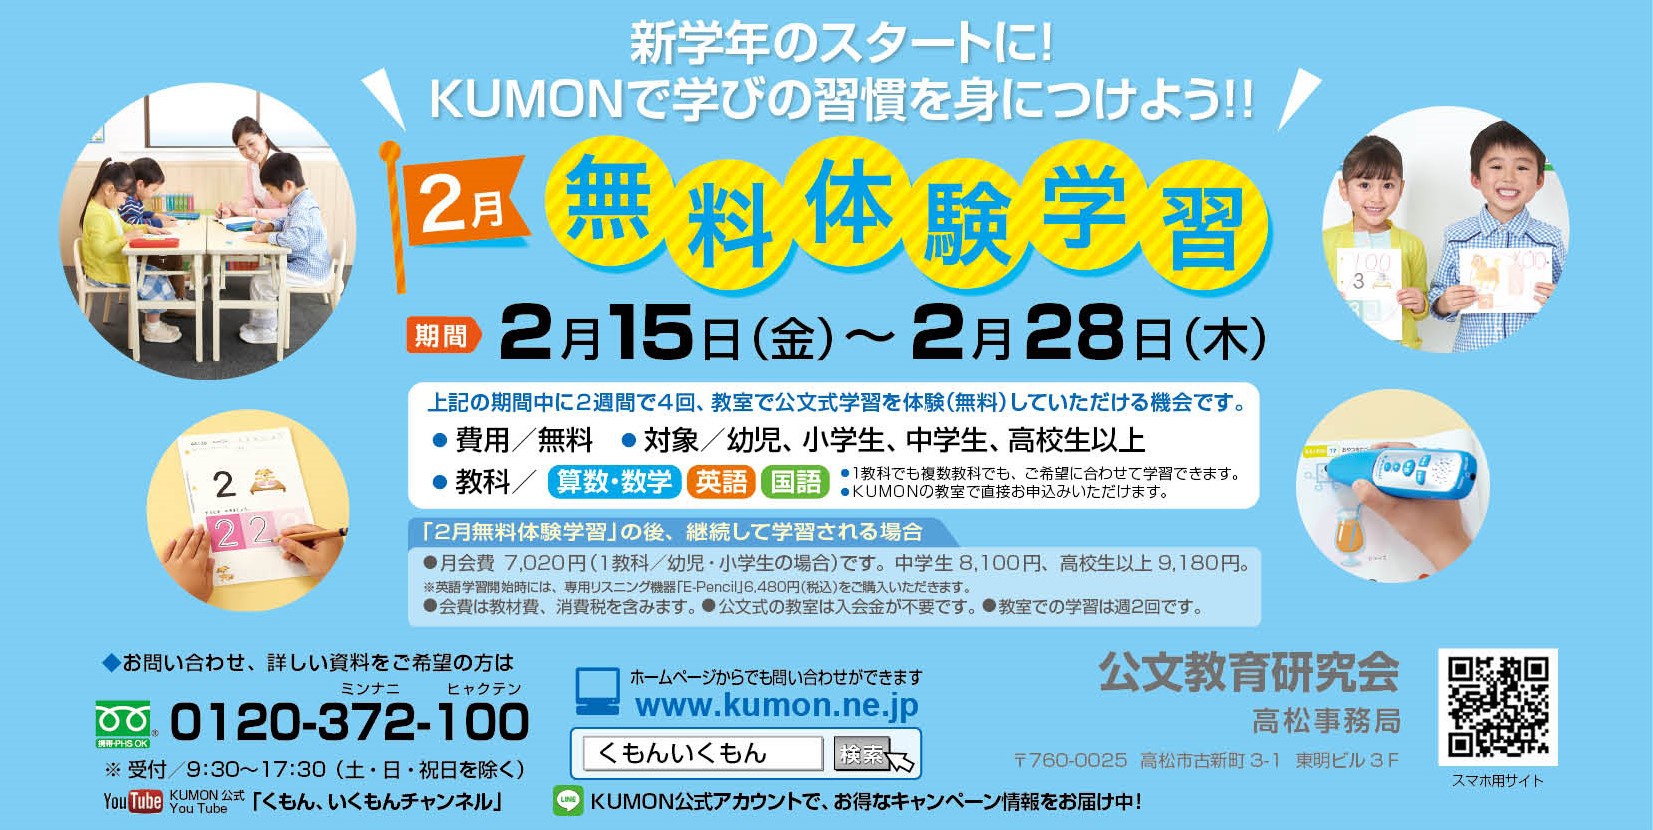 2 15 28 Kumon無料体験学習 習い事を検討されているなら 香川の子育て支援 改善 Npo法人わははネット